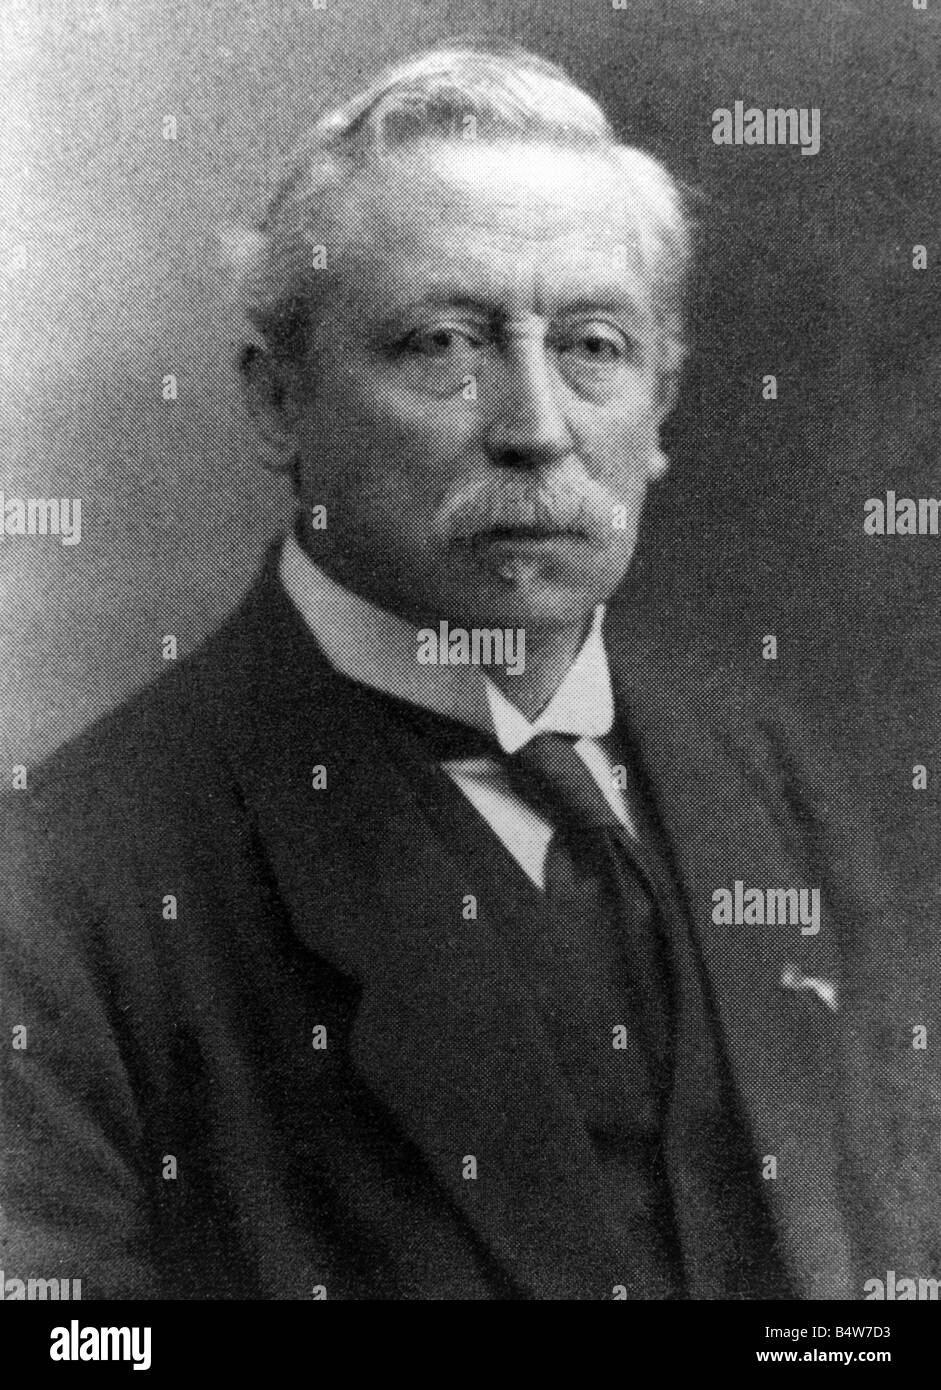 Eijkman, Christiaan, 11.8.1858 - 5.11.1930, niederländischer Arzt, Pathologe, Bakteriologe, Hygieniker, Porträt, Foto, ca. 1900, Stockfoto